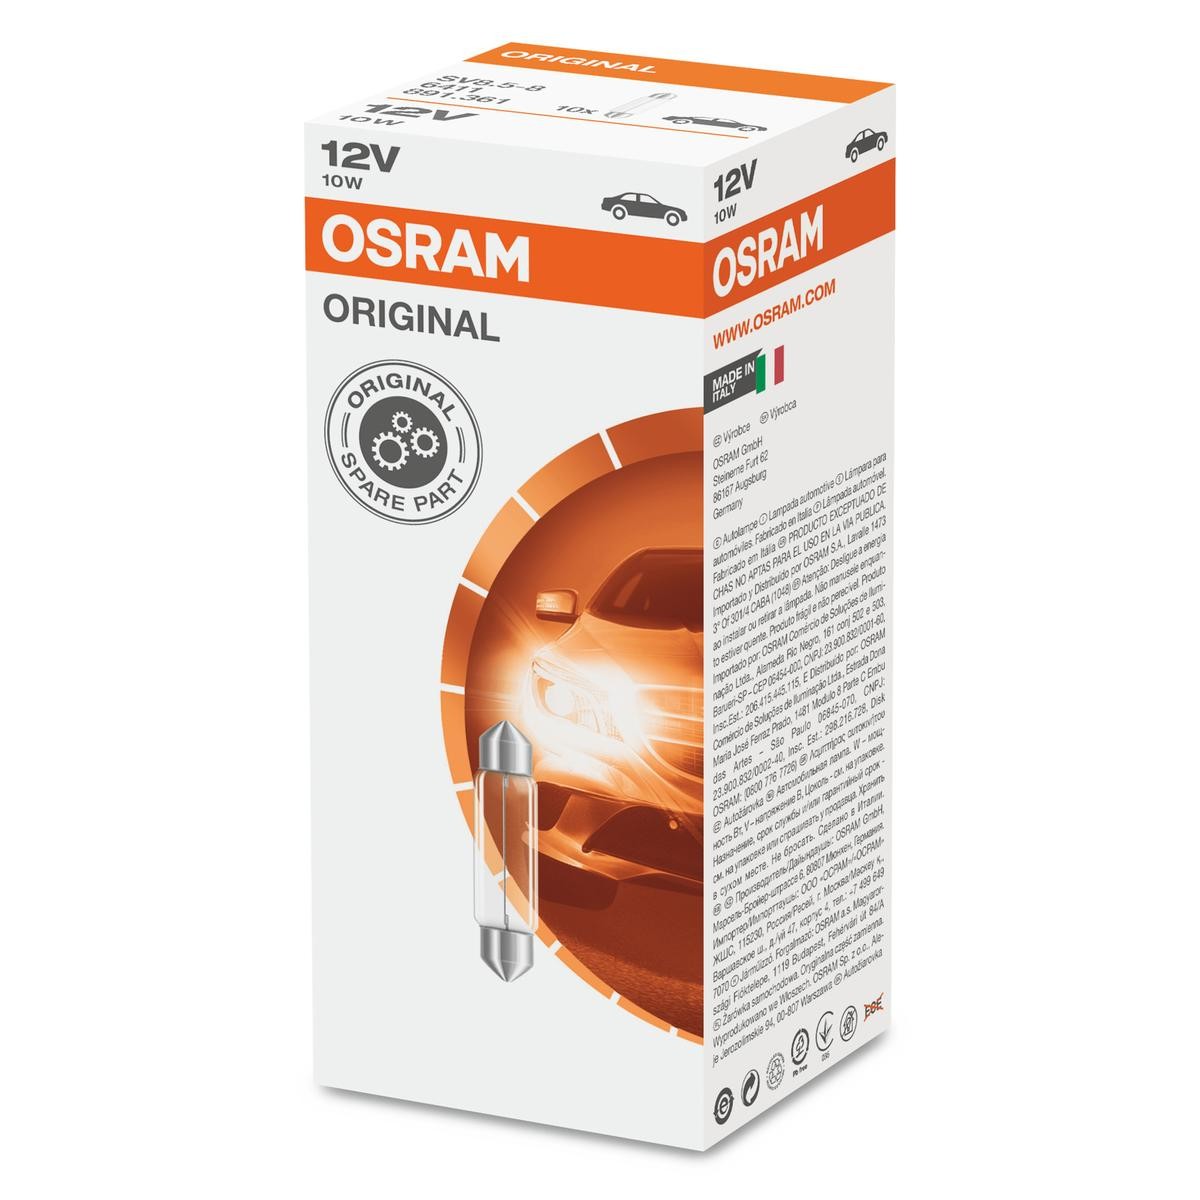 OSRAM 6411 MITSUBISHI Door light